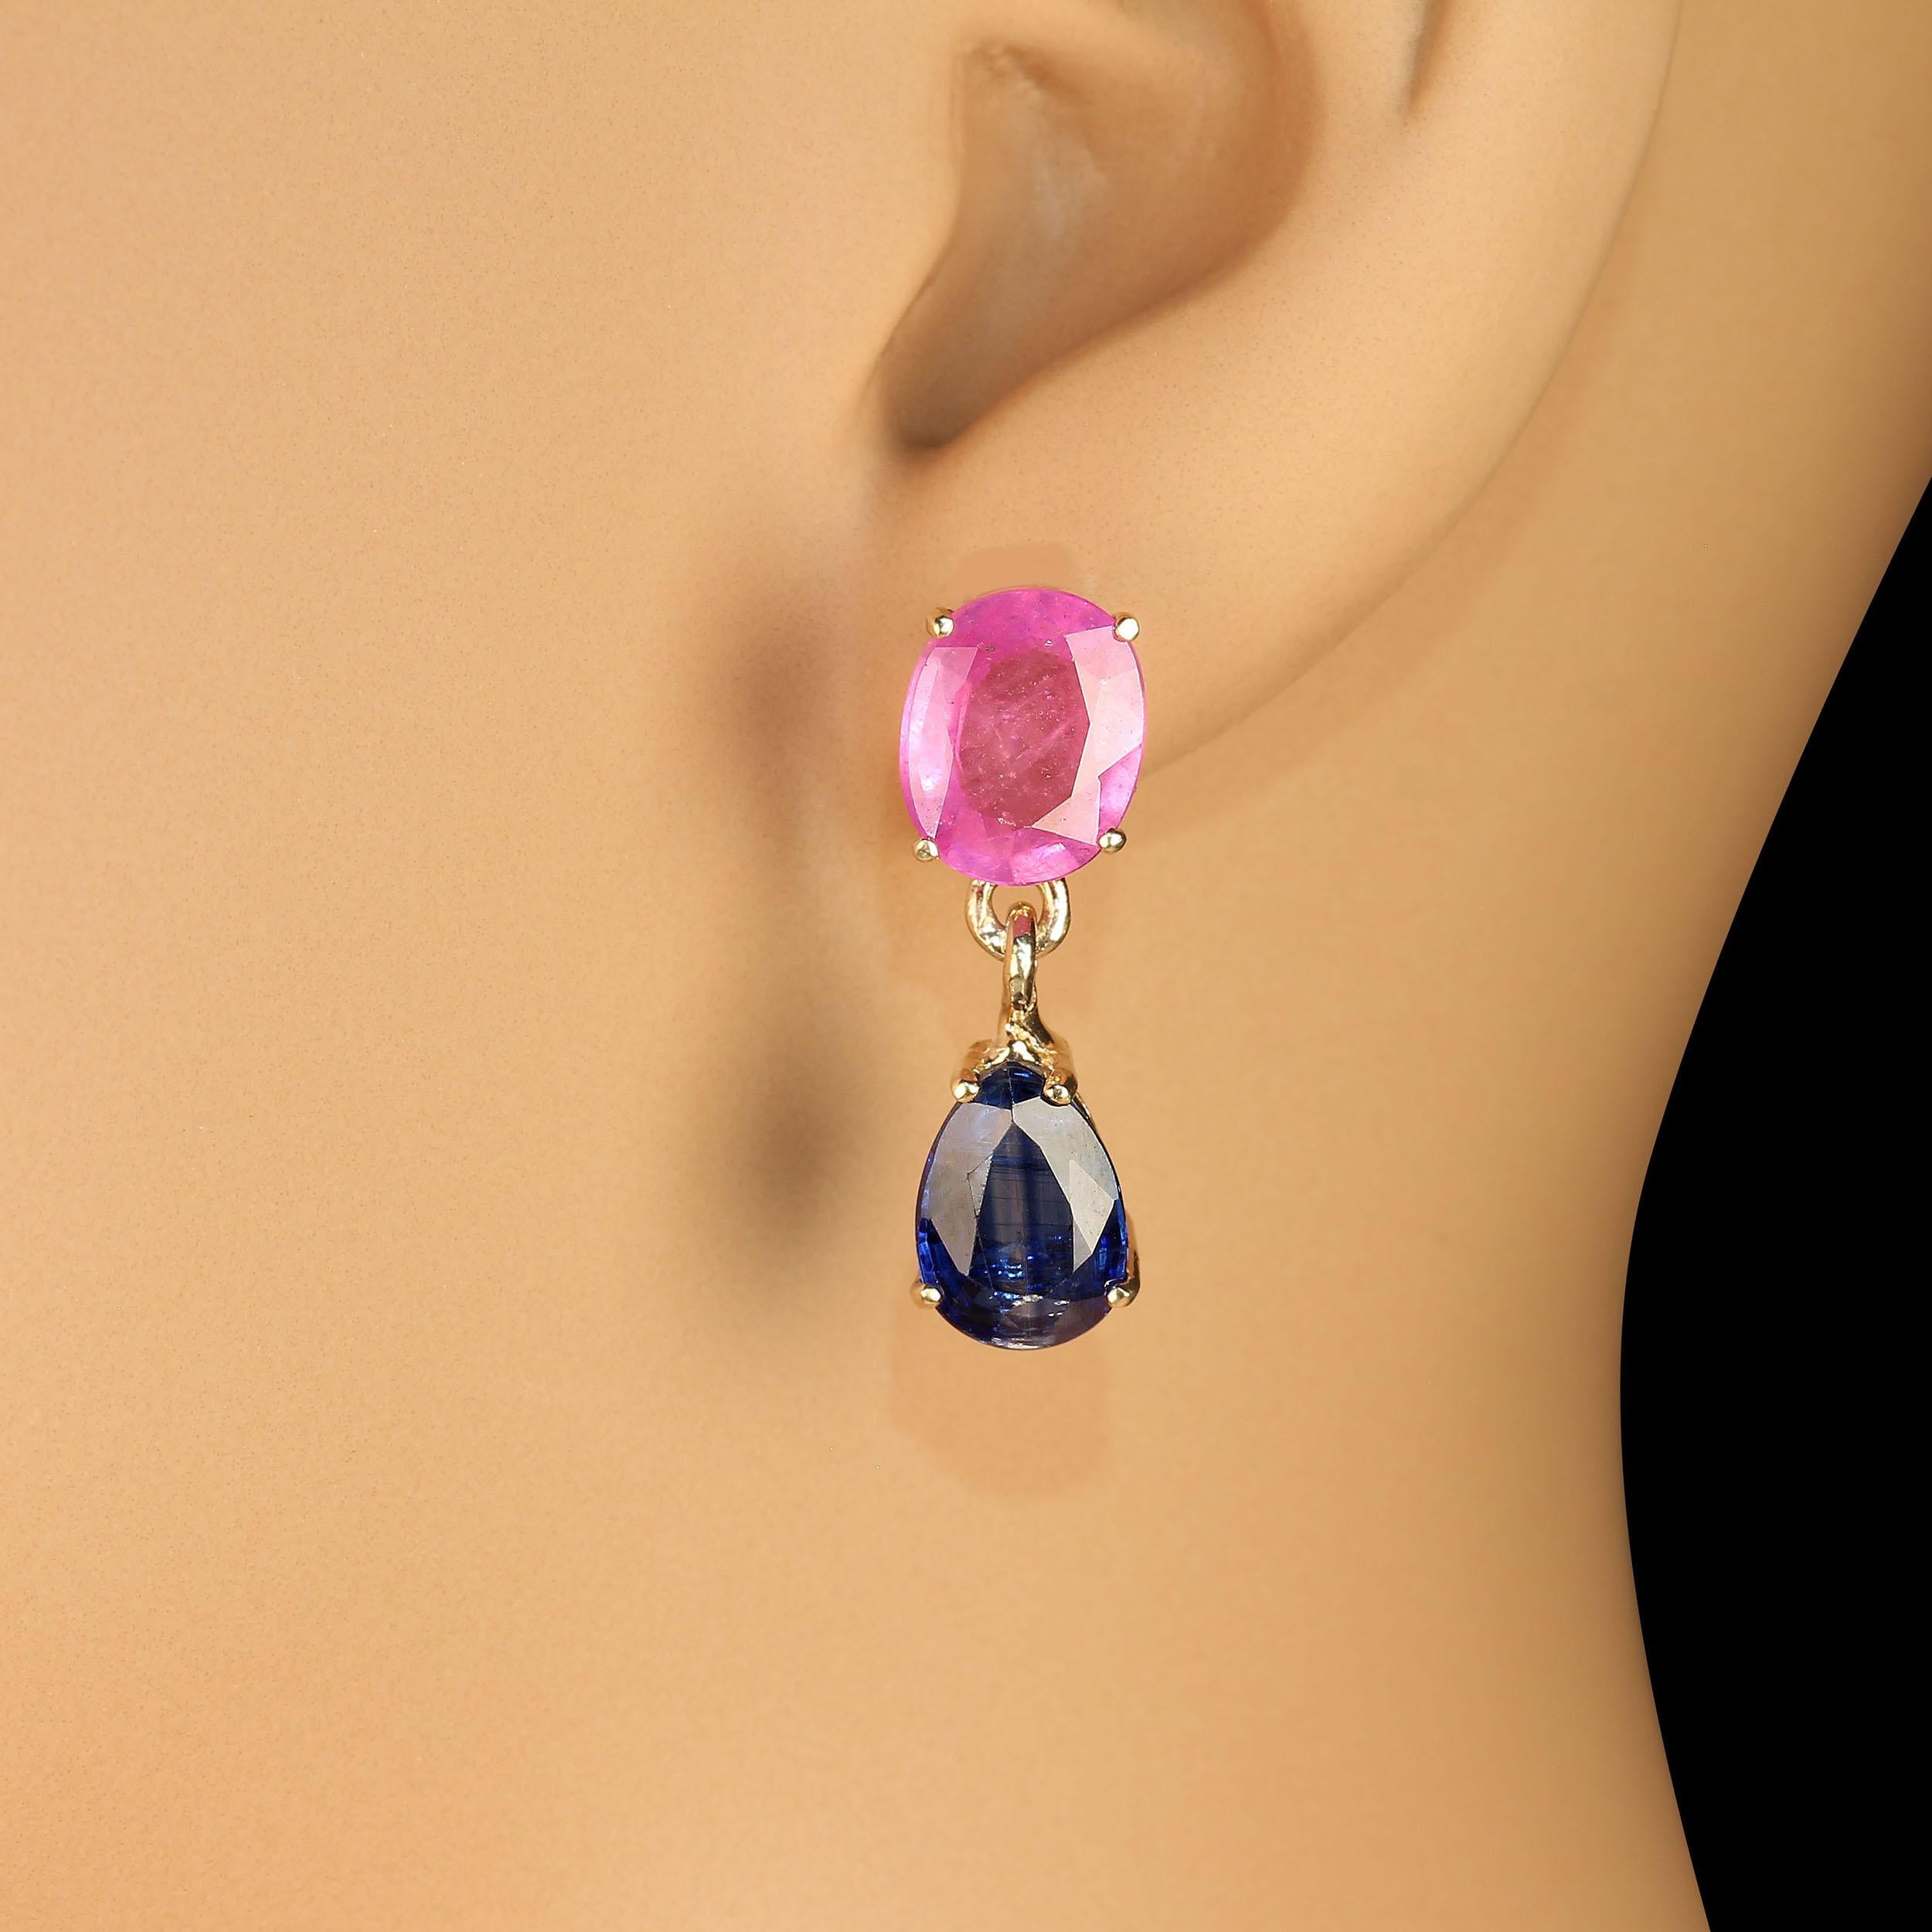 Hübsche Ohrringe mit ovalen rosa Saphiren, 6,64ct, mit Stiften und birnenförmigen blauen Kyaniten, 4,02ct, baumeln. Wir haben diese herrlichen Edelsteine in handgefertigtes 14-karätiges Gelbgold gefasst. Diese berylliumbehandelten Saphire sind